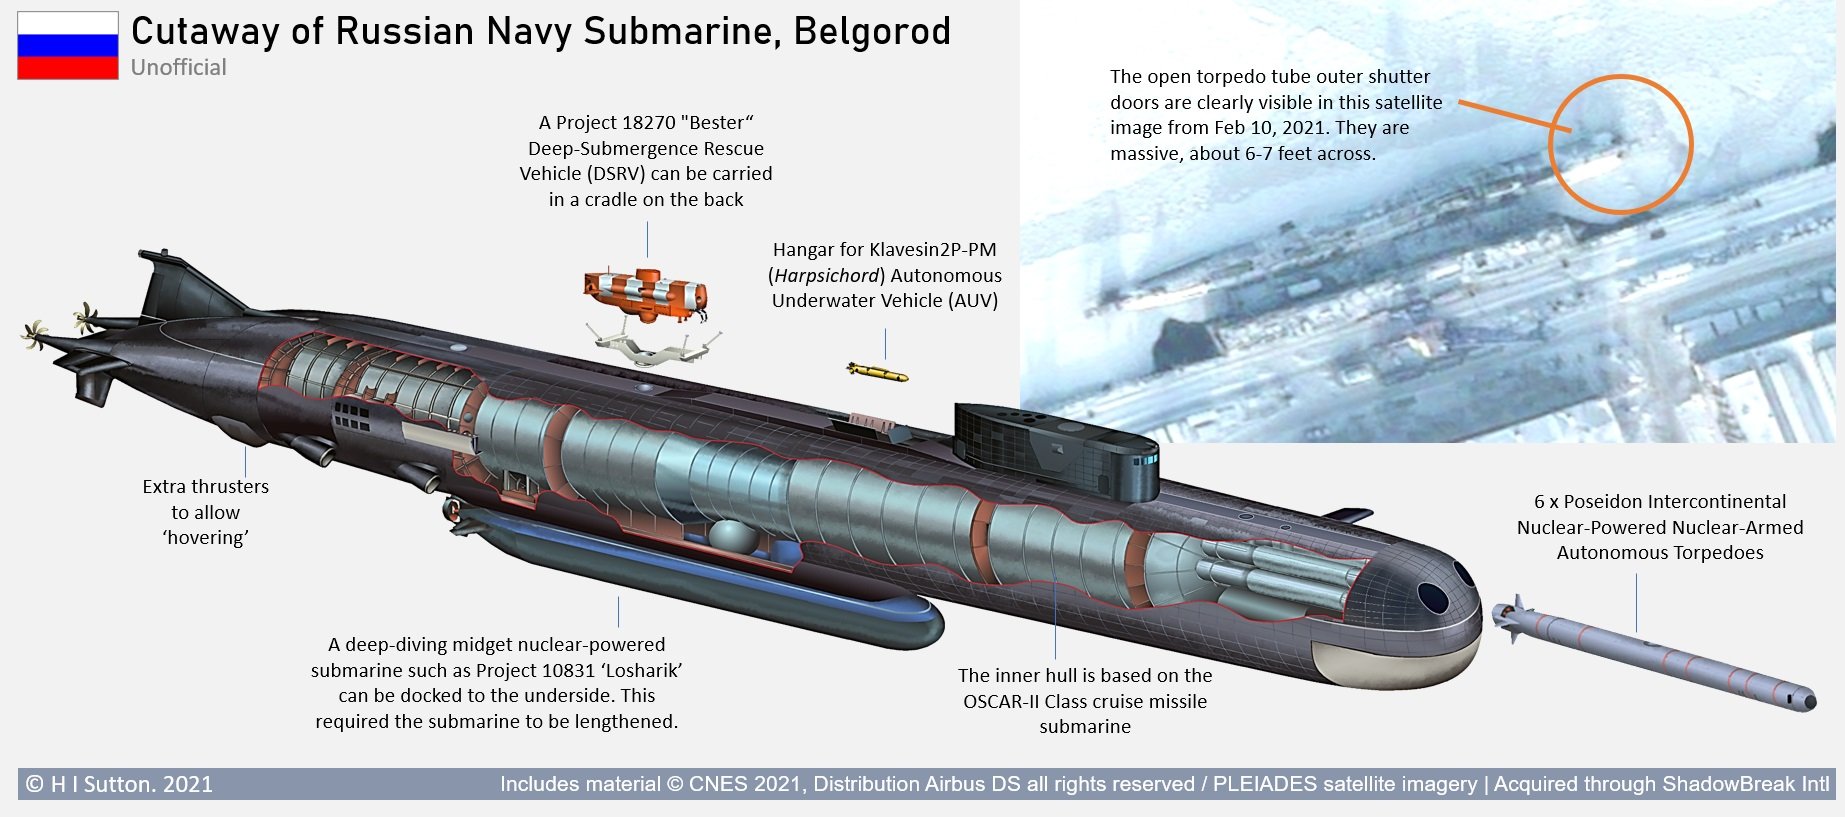 Ilustrație a submarinului Belgorod / Foto: H I Sutton 